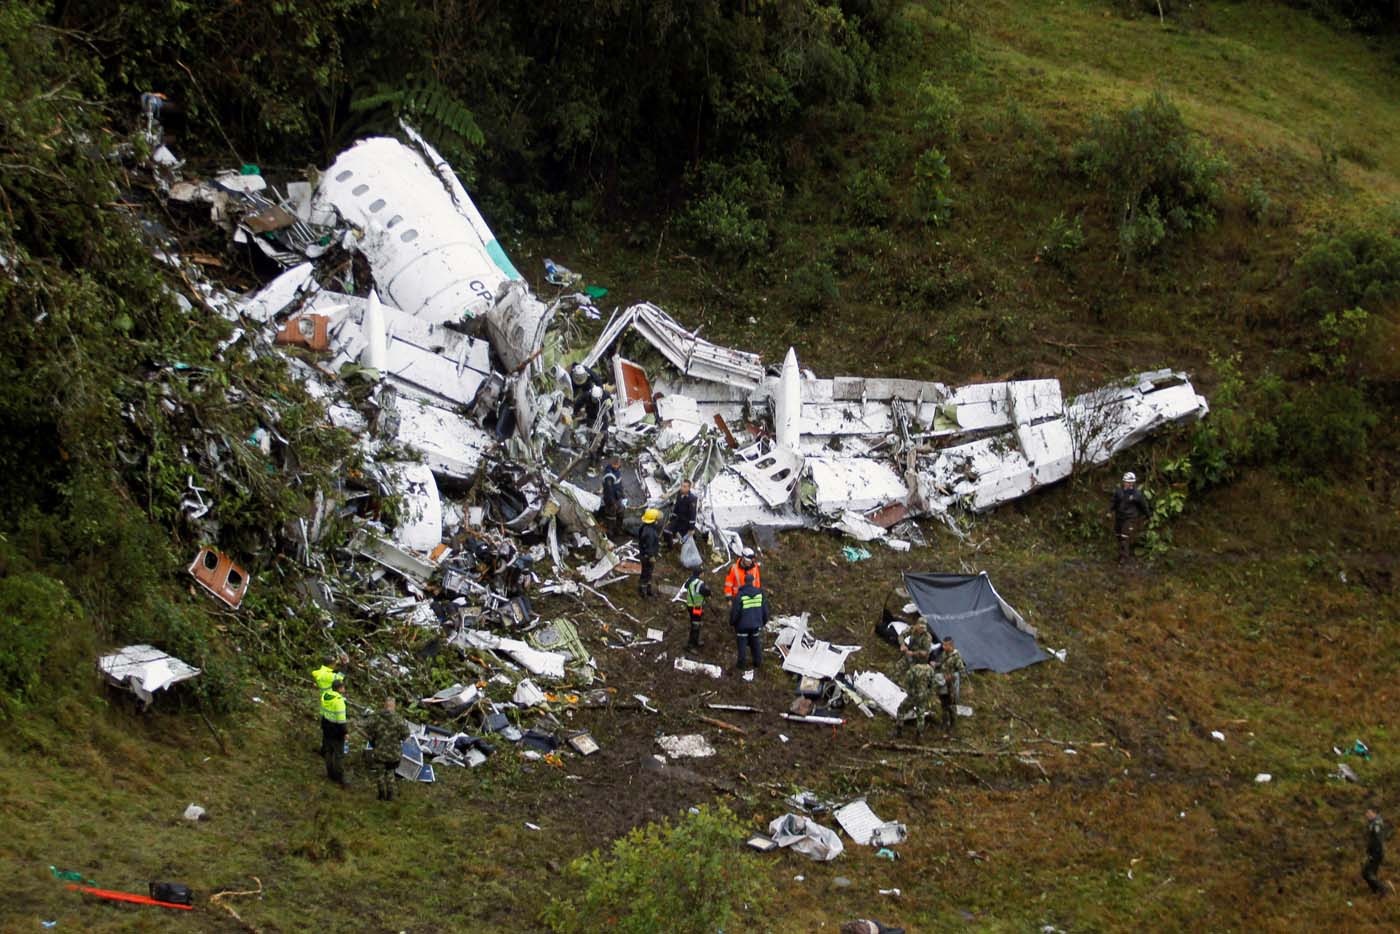 Hijo de copiloto en tragedia aérea en Colombia: Mi padre seguro buscó “salvar vidas”